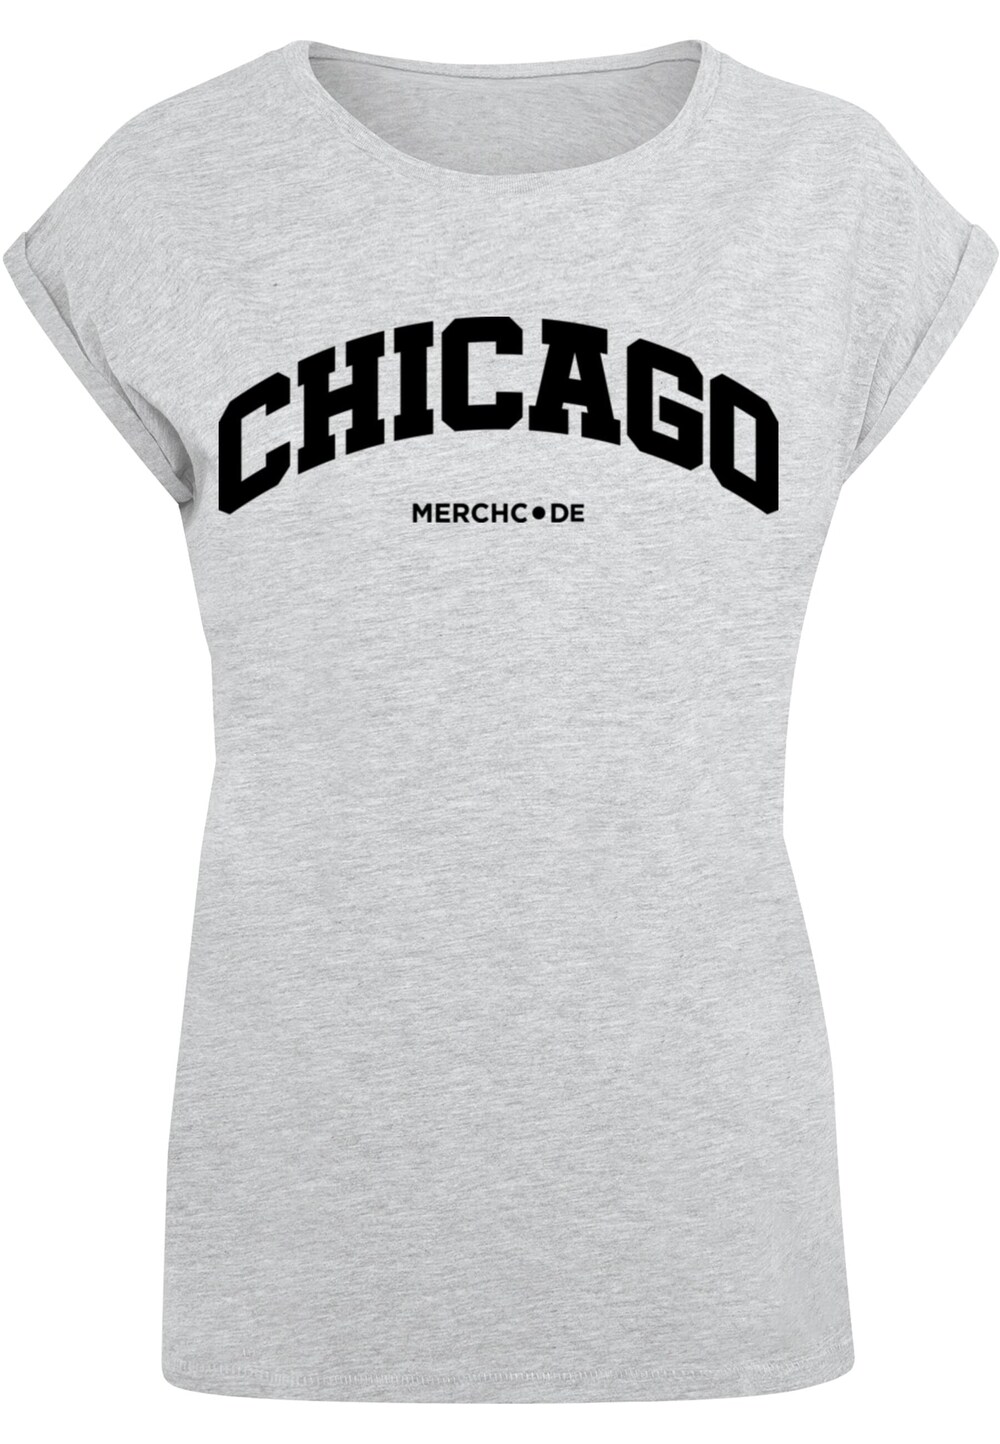 Рубашка Merchcode Chicago, пестрый серый